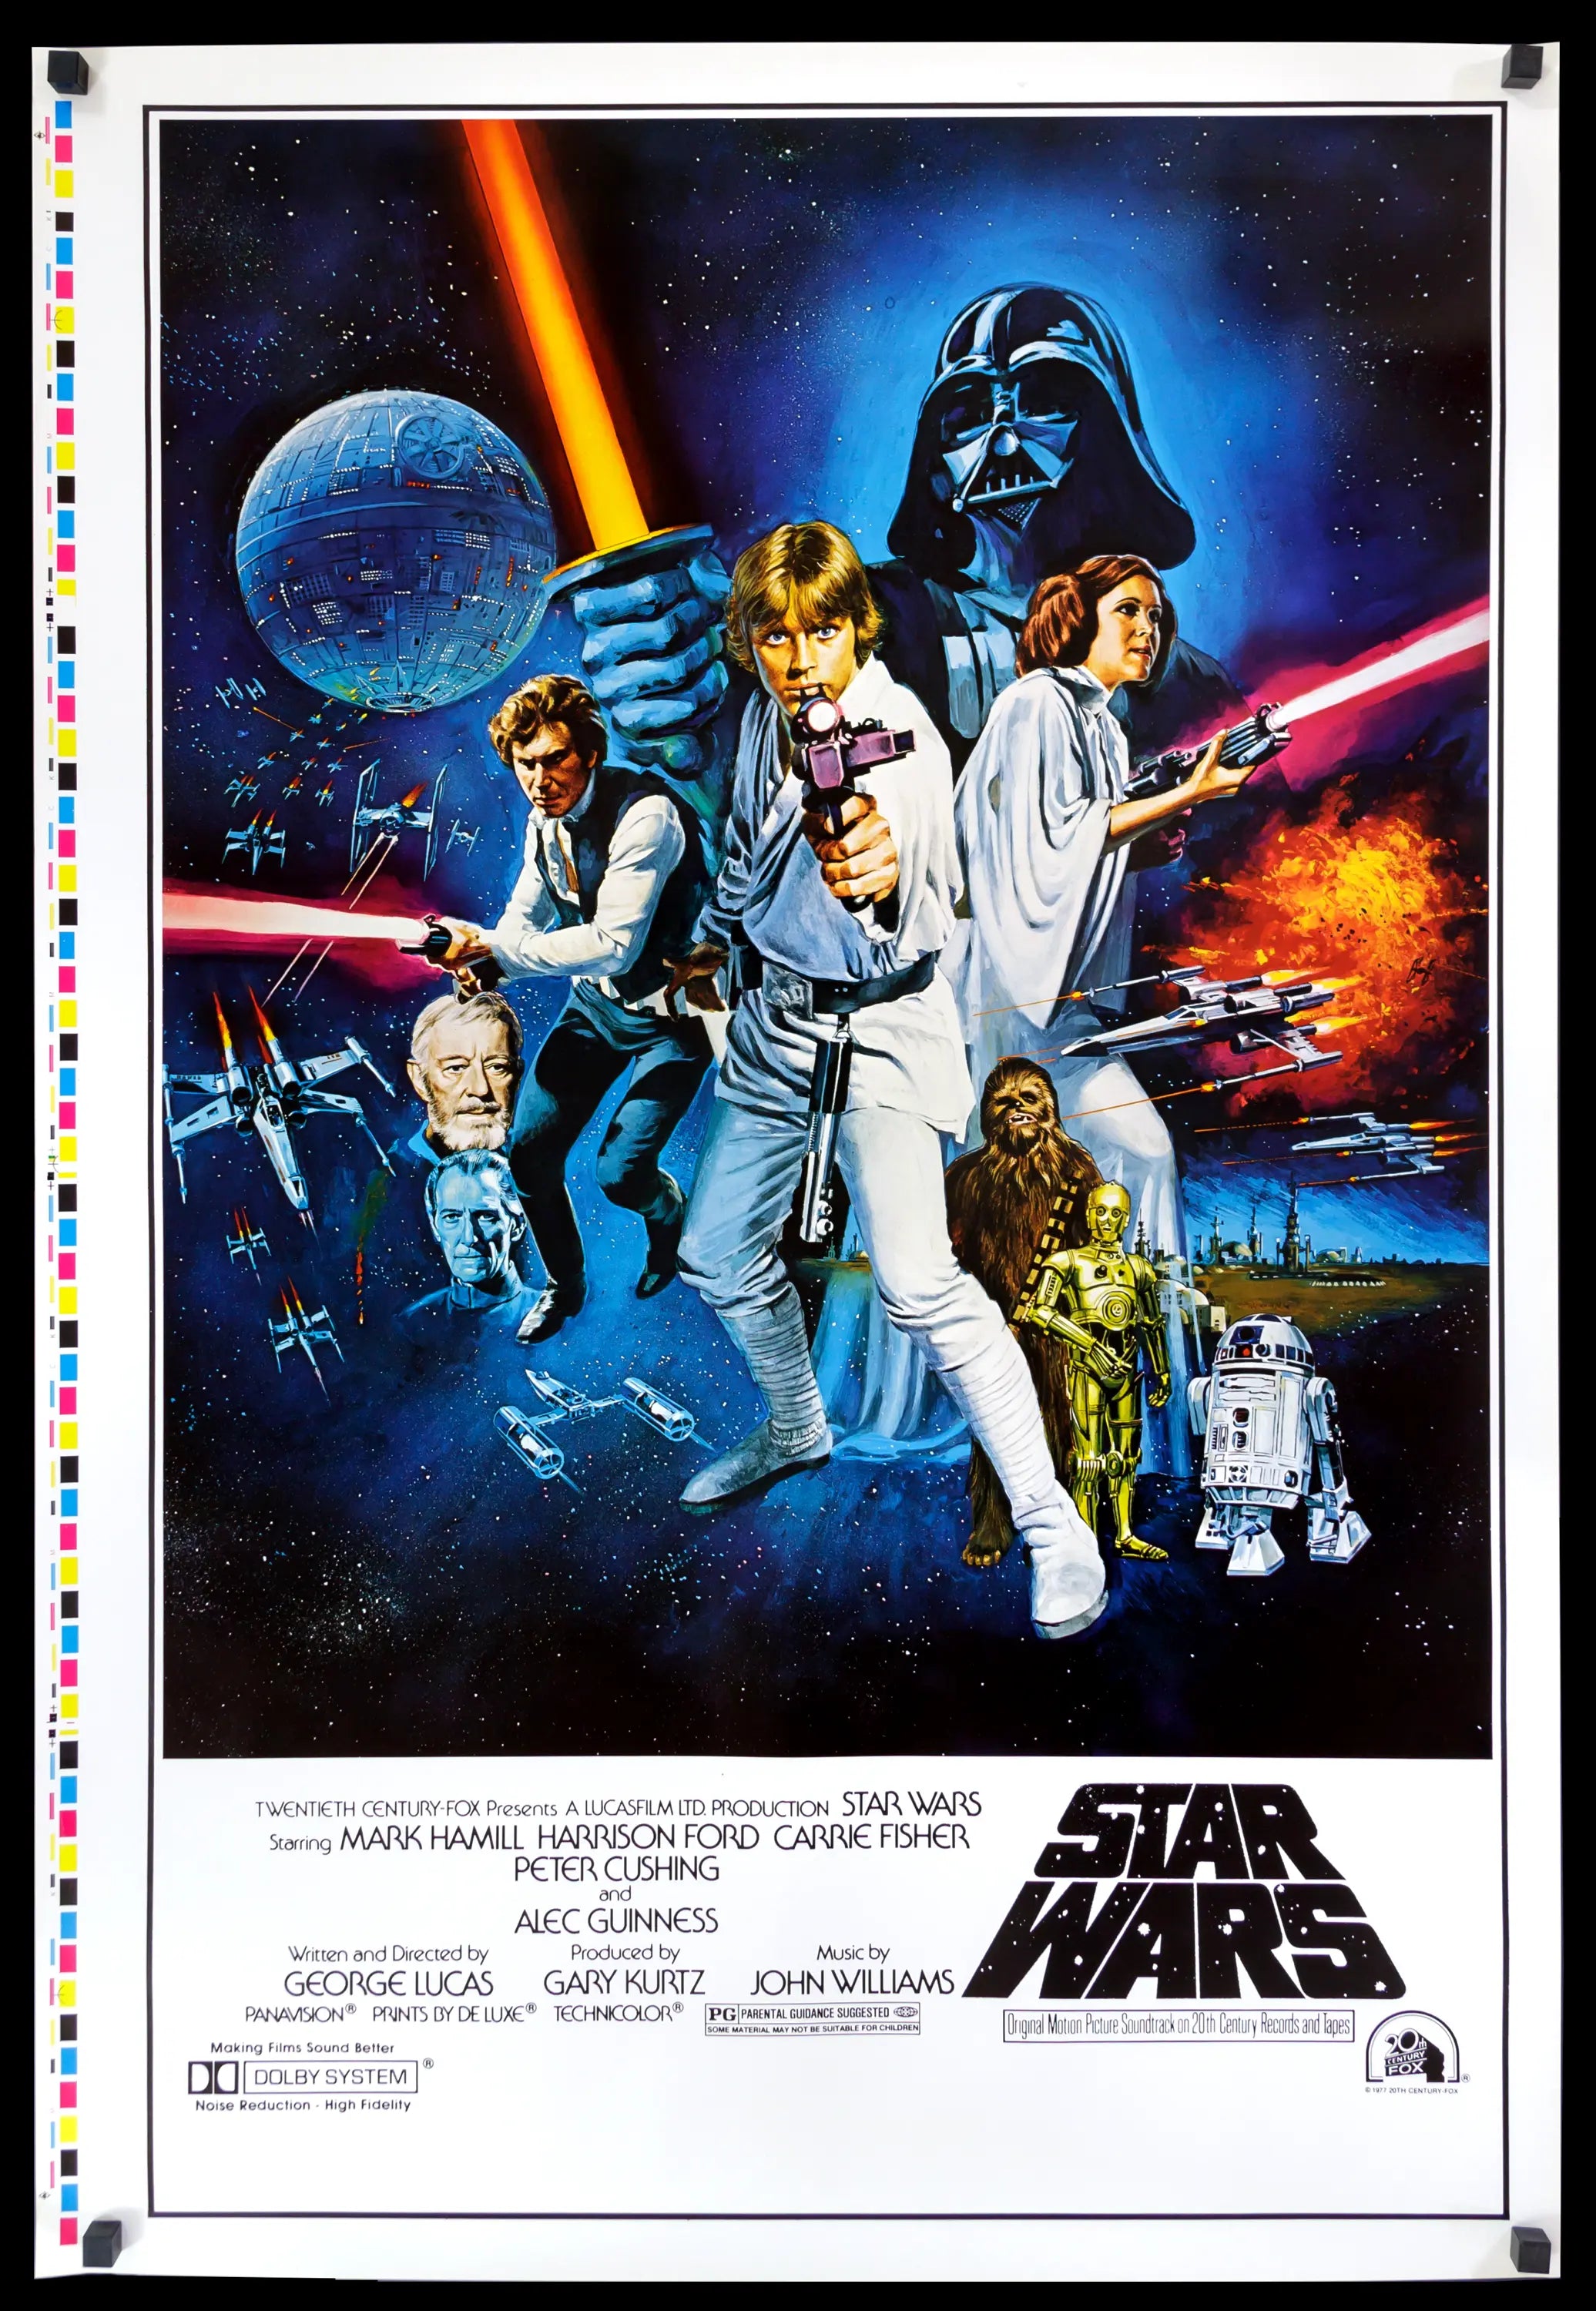 Star Wars Hong Kong Film Poster Print